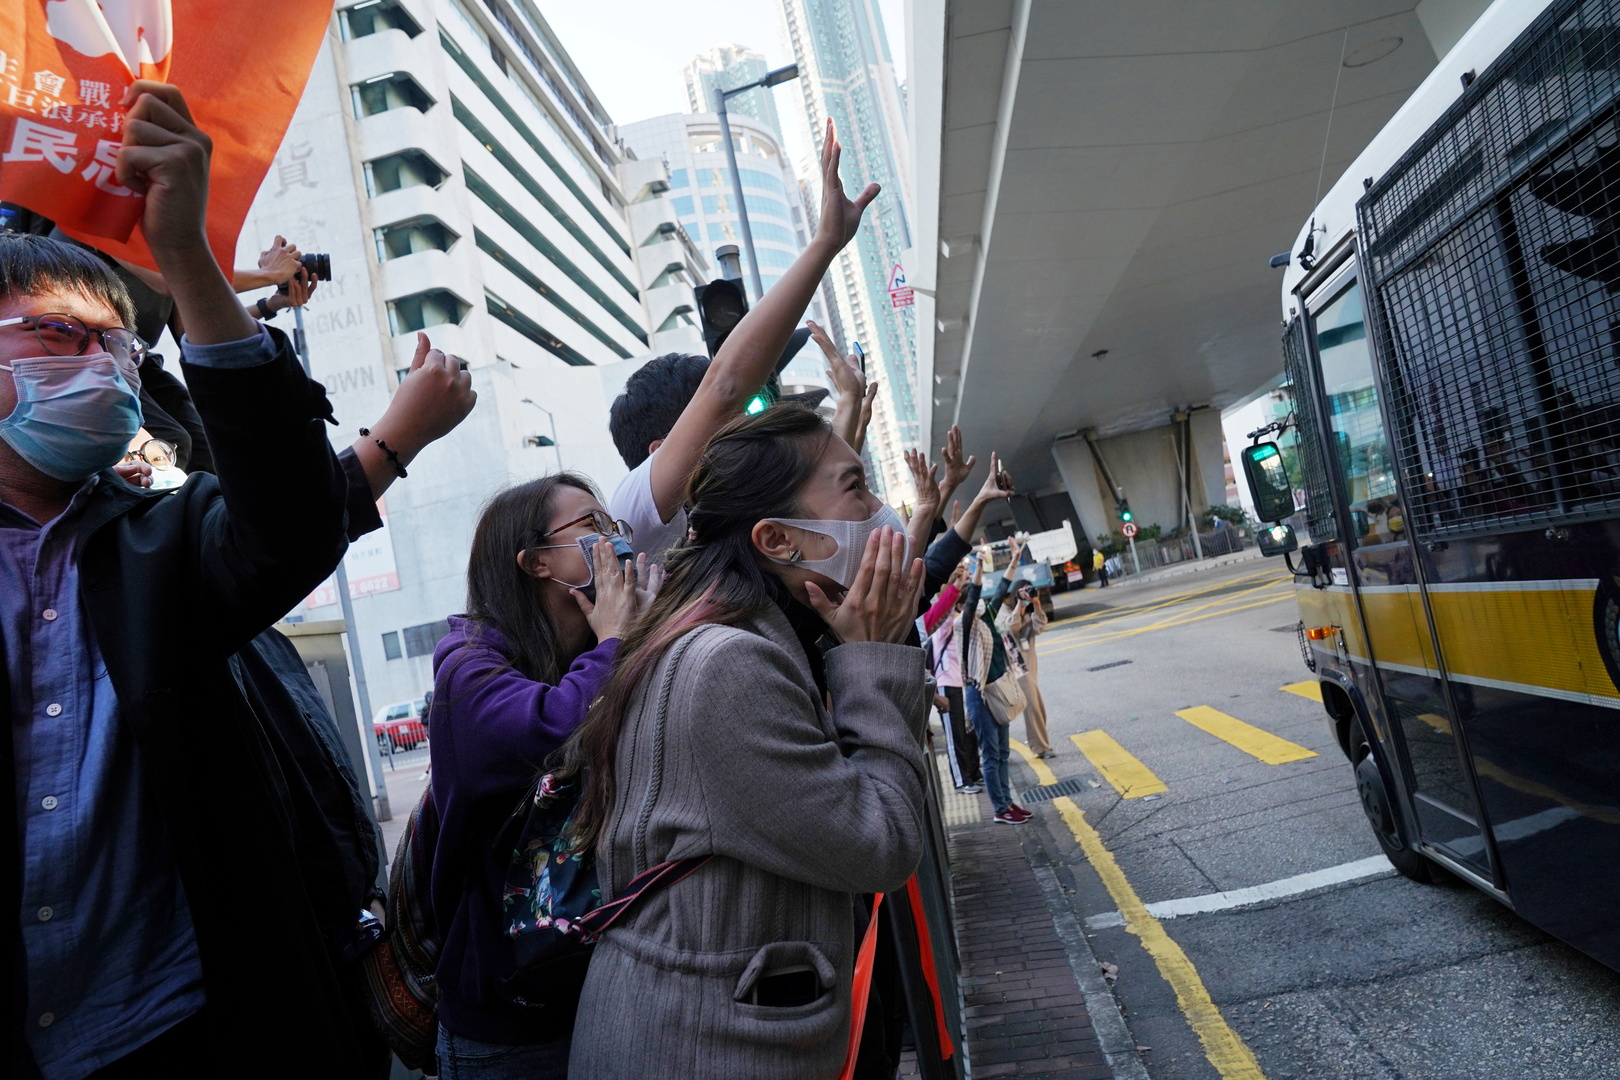 بيان غربي يستنكر اعتقال الصين لنشطاء في هونغ كونغ